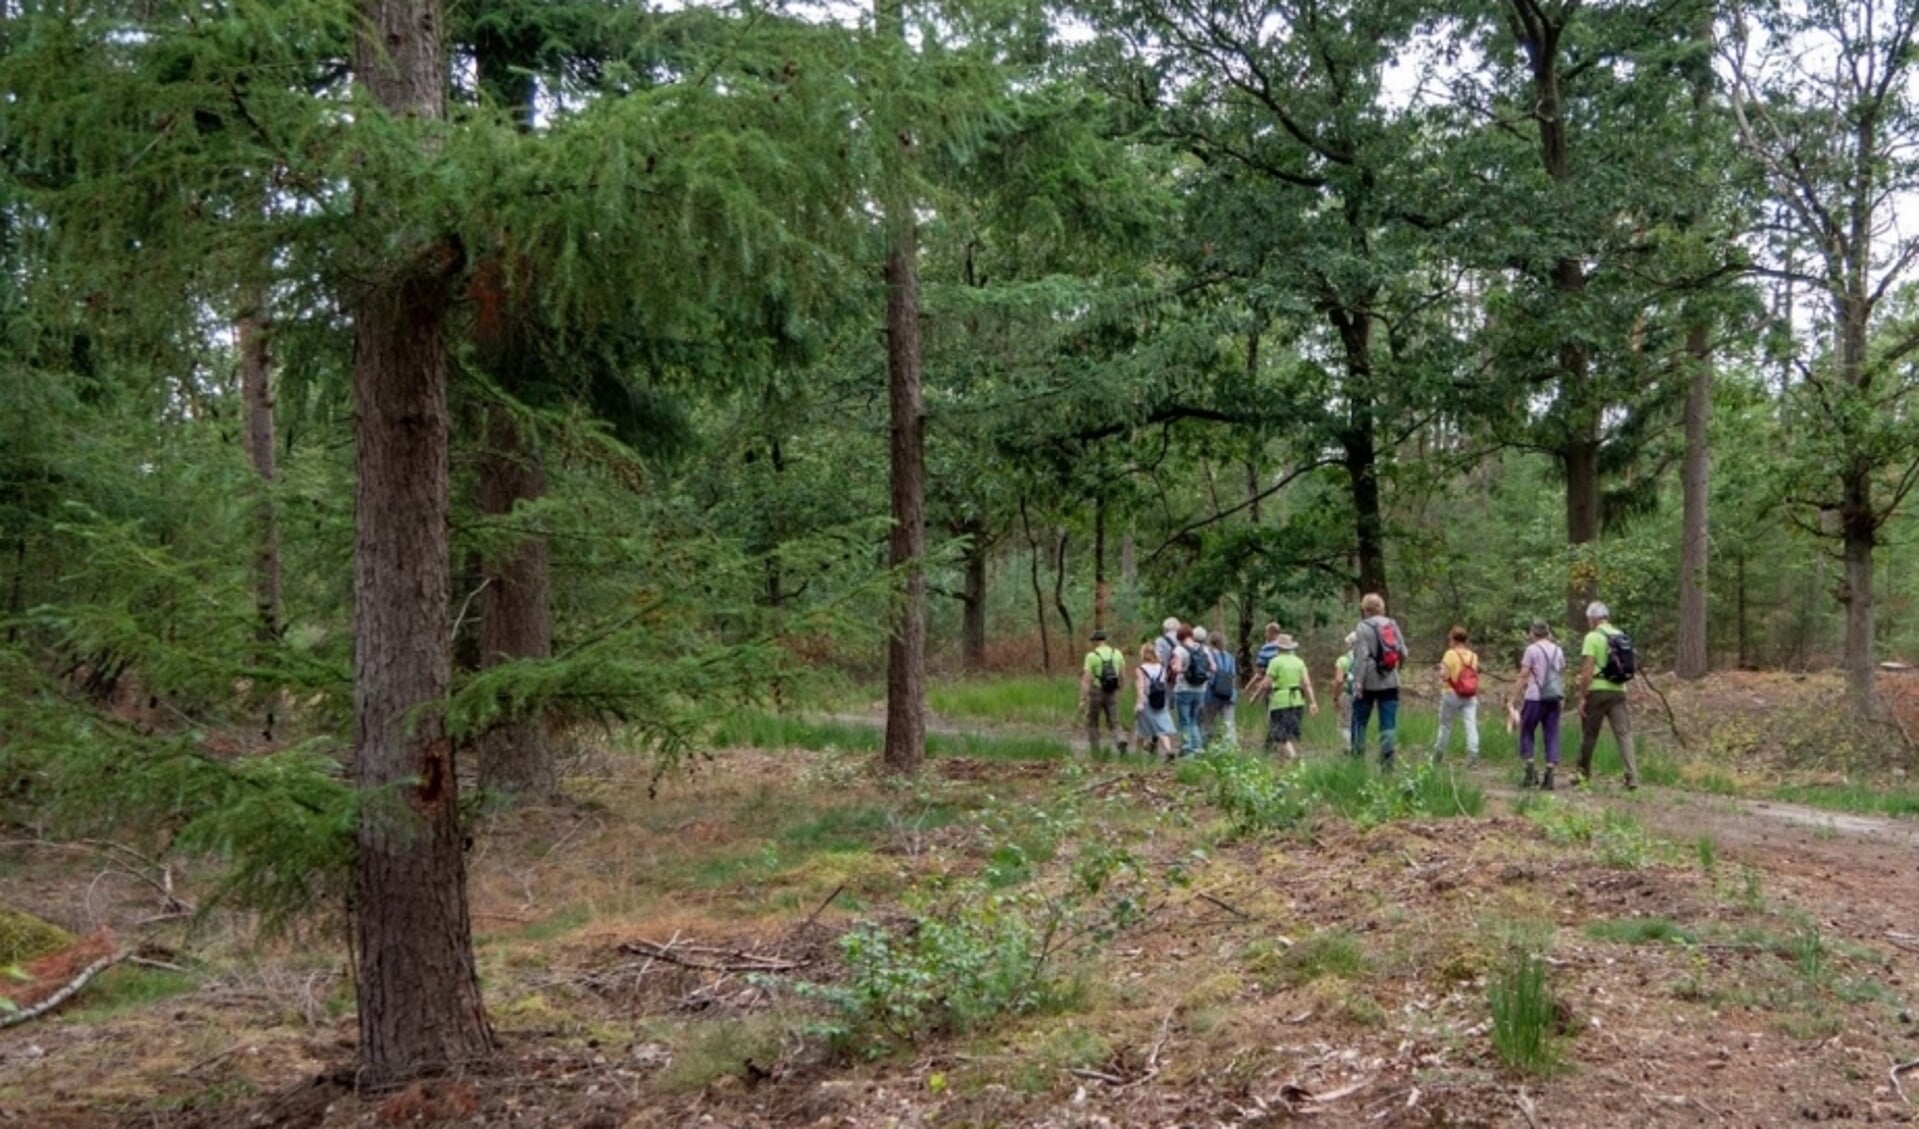 Natuurgidsen van IVN Geldrop nemen liefhebbers mee voor een flinke wandeling. (Foto: Frans van den Boom)